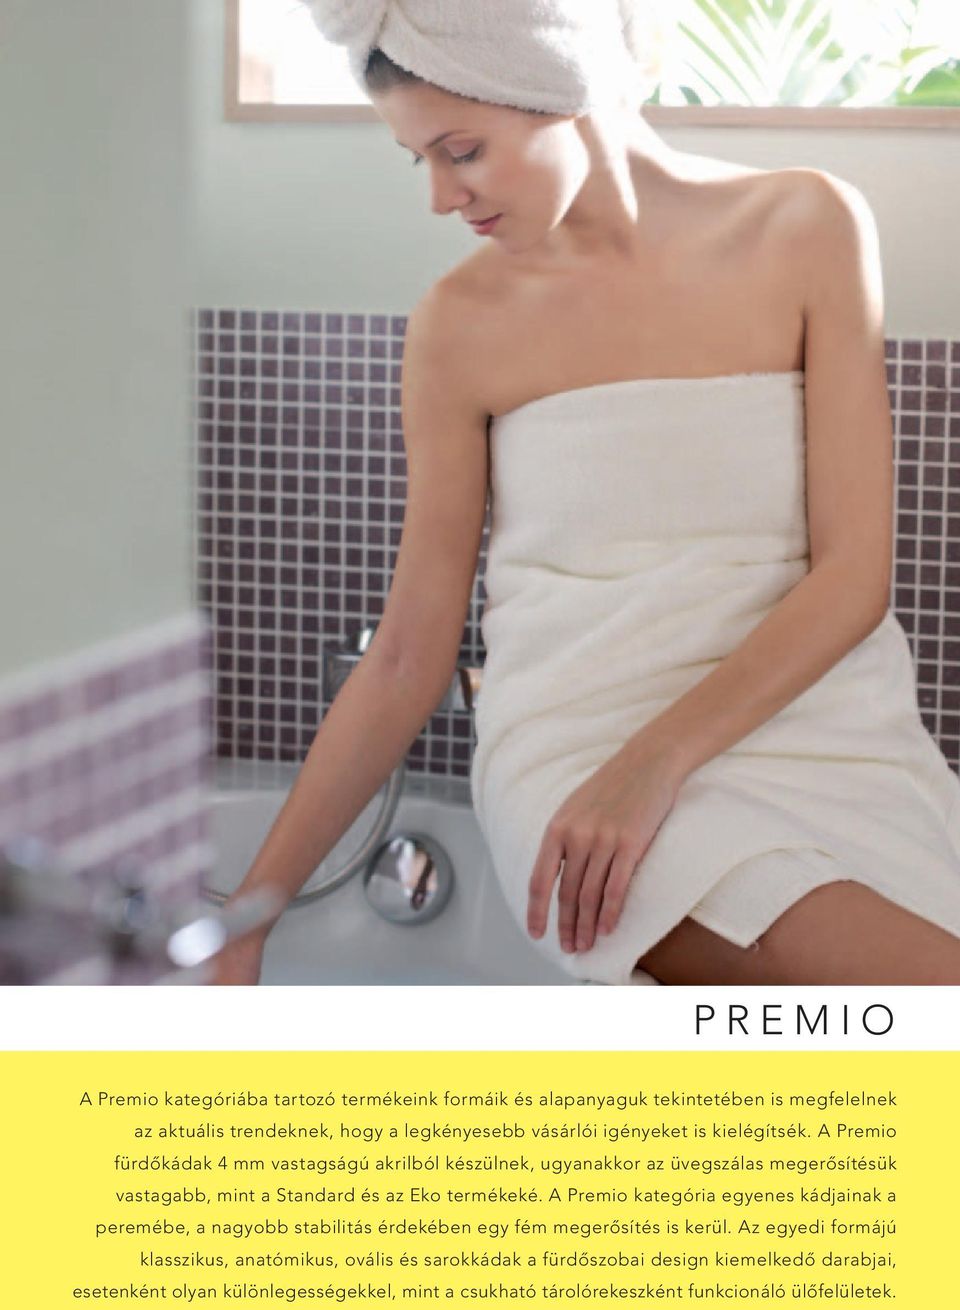 A Premio fürdőkádak 4 mm vastagságú akrilból készülnek, ugyanakkor az üvegszálas megerősítésük vastagabb, mint a Standard és az Eko termékeké.